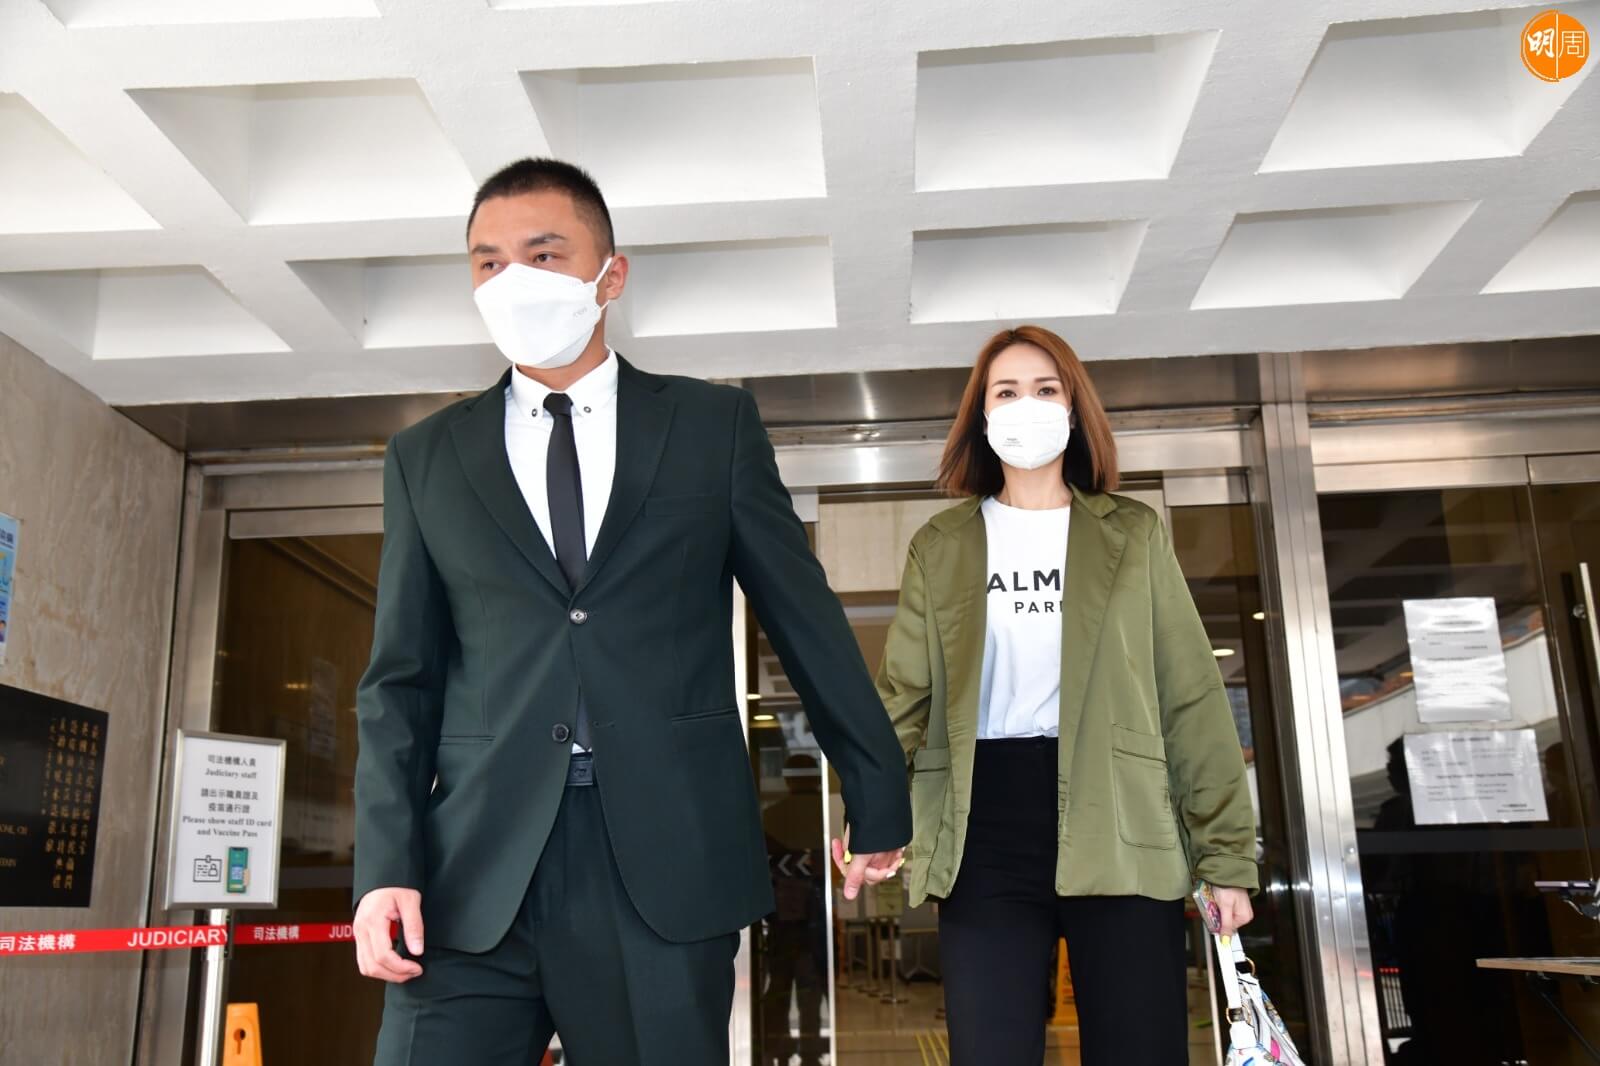 獲准保釋的楊明，拖住女友莊思明離開法院。